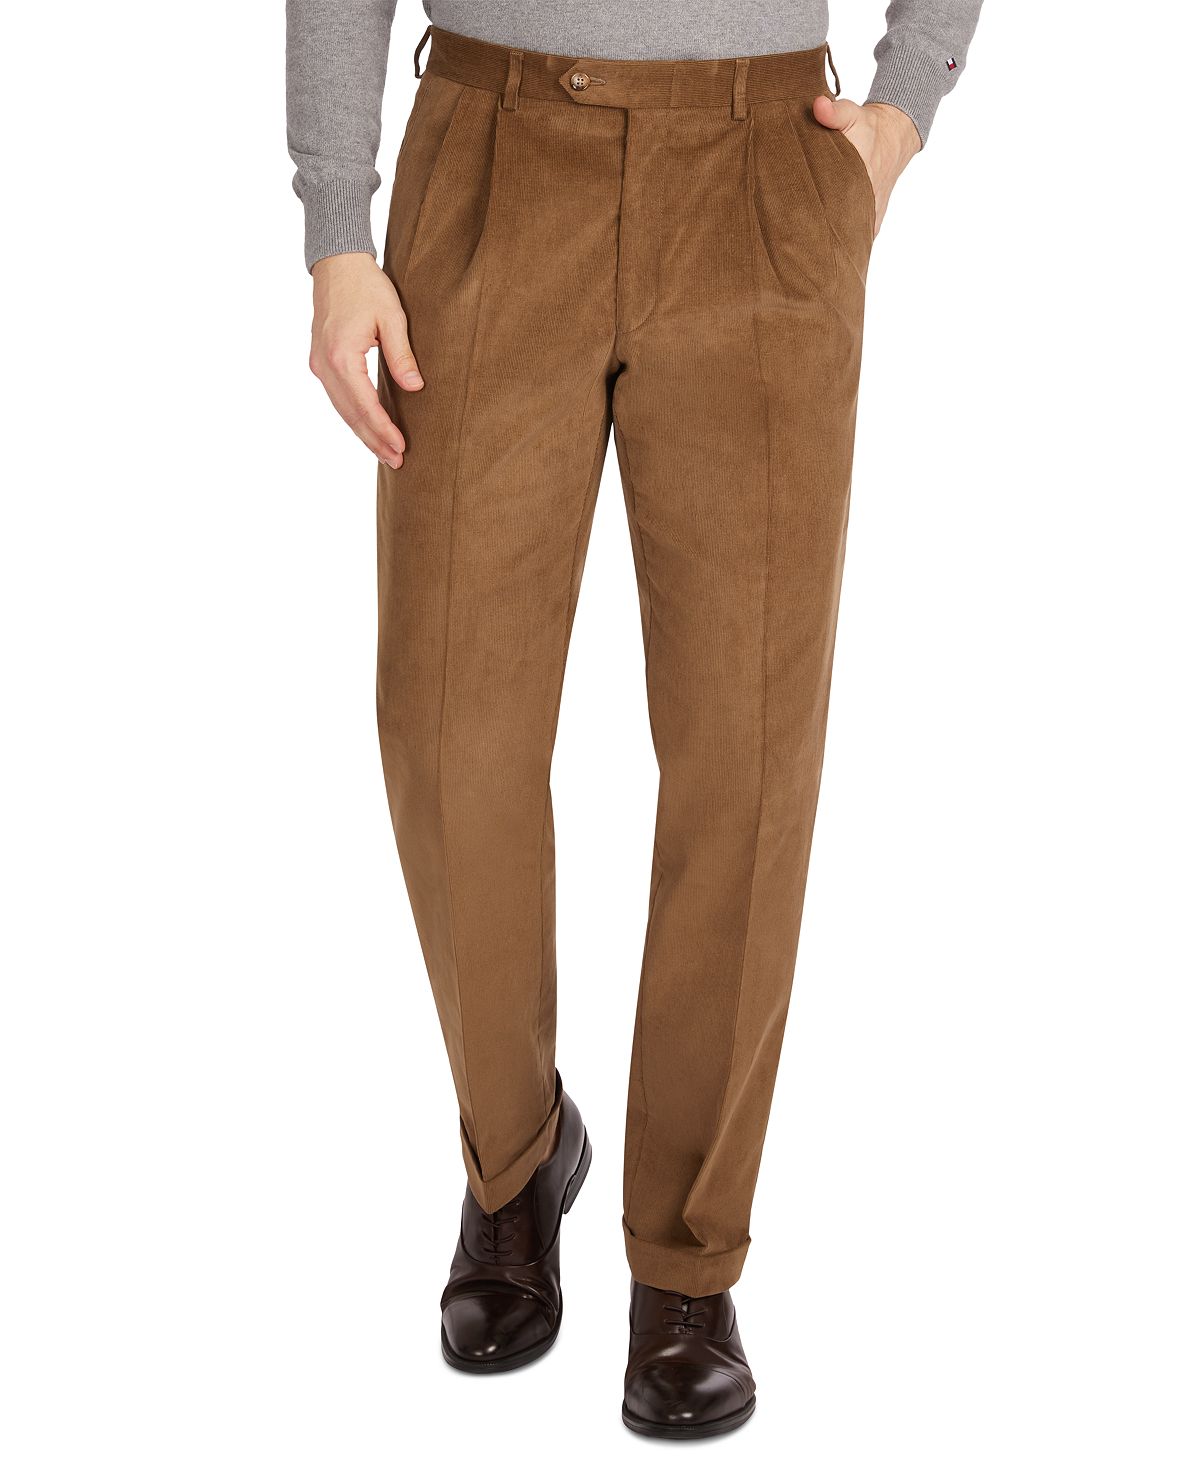 Lauren Ralph Lauren Men's Dress Pants Gray Pin Striped Size 20R 30 x 27.5  NWOT! | eBay